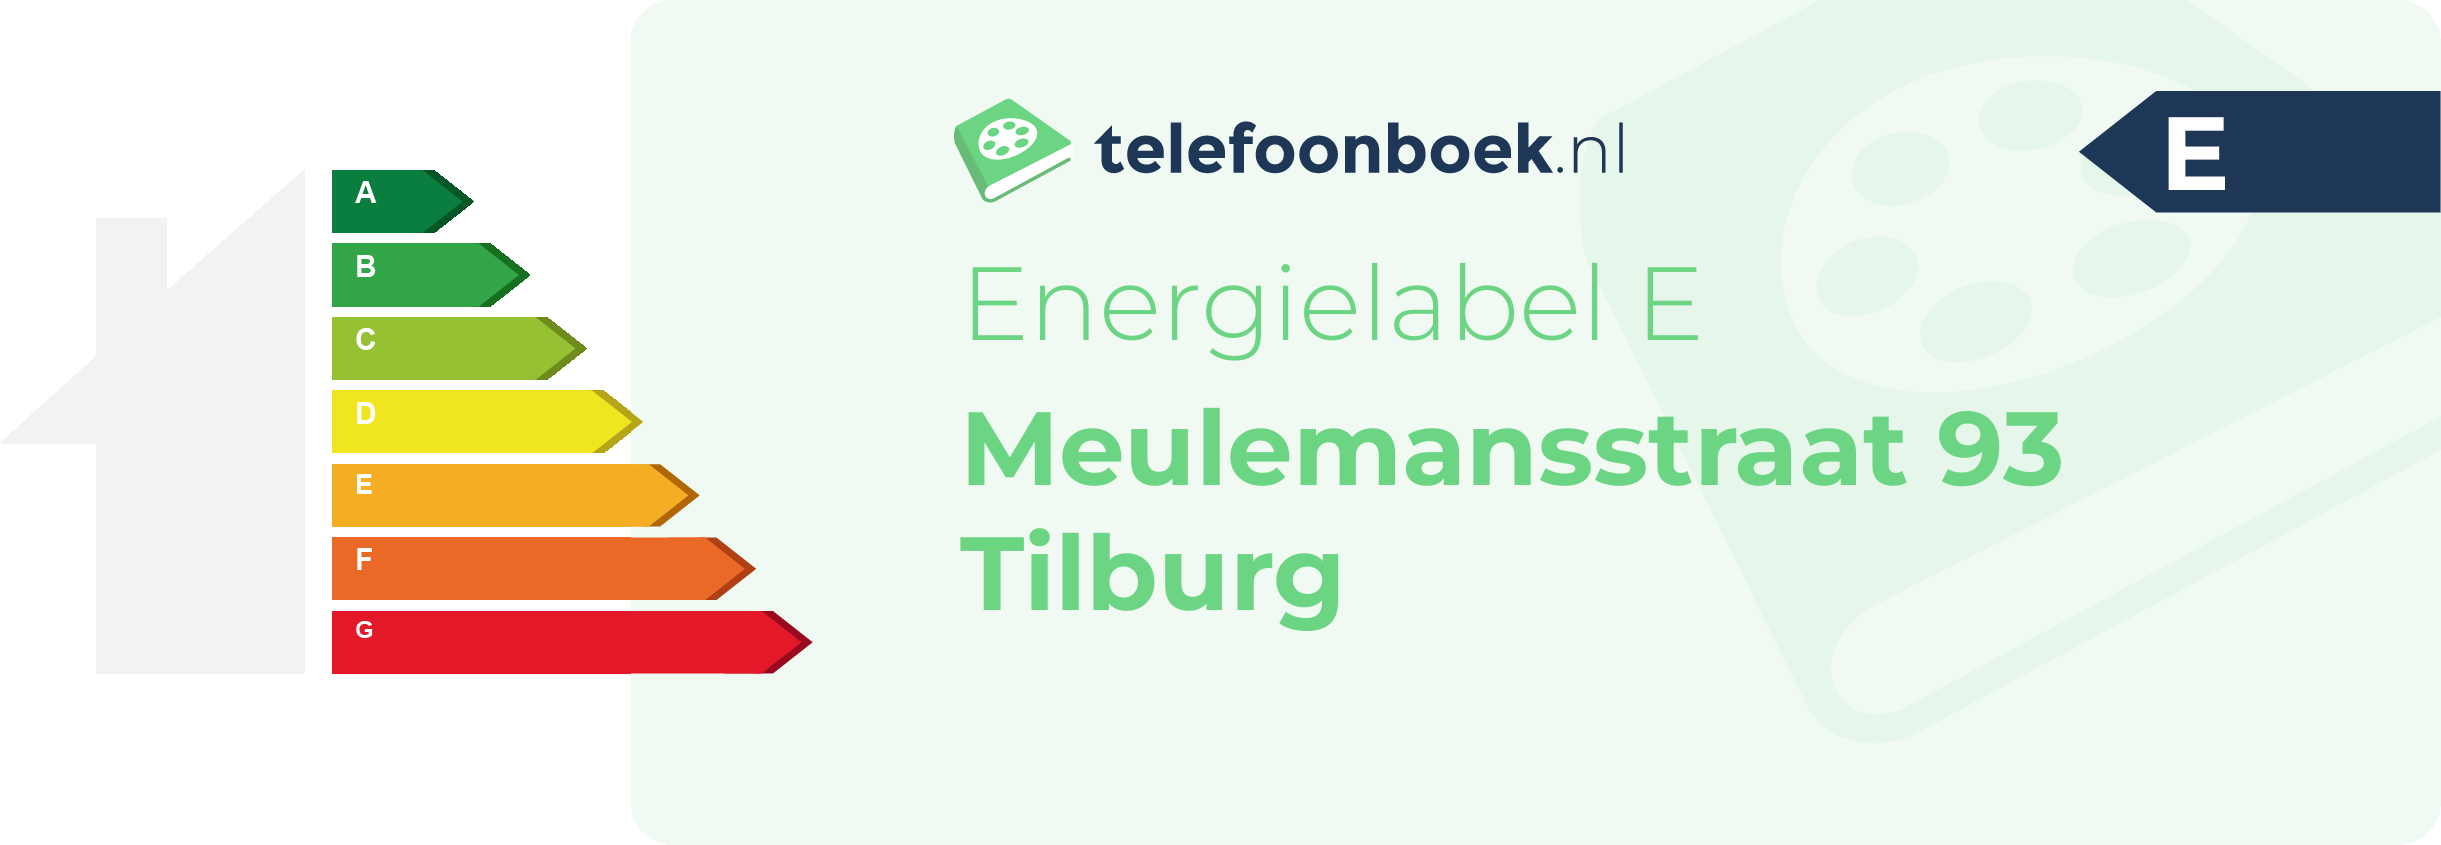 Energielabel Meulemansstraat 93 Tilburg